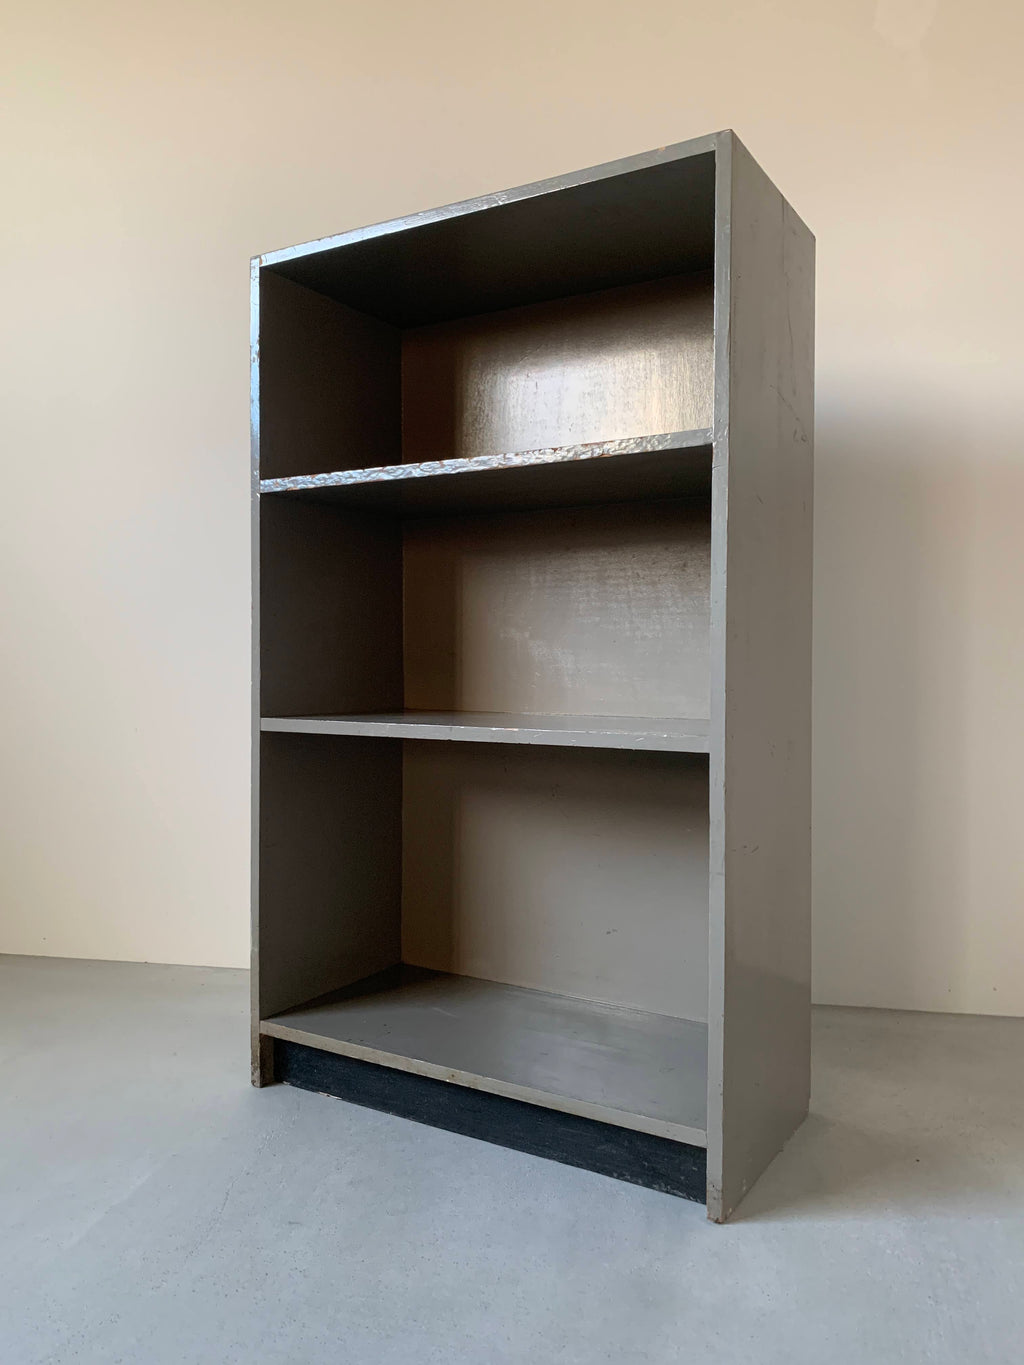 ブックケース / bookcase #0226